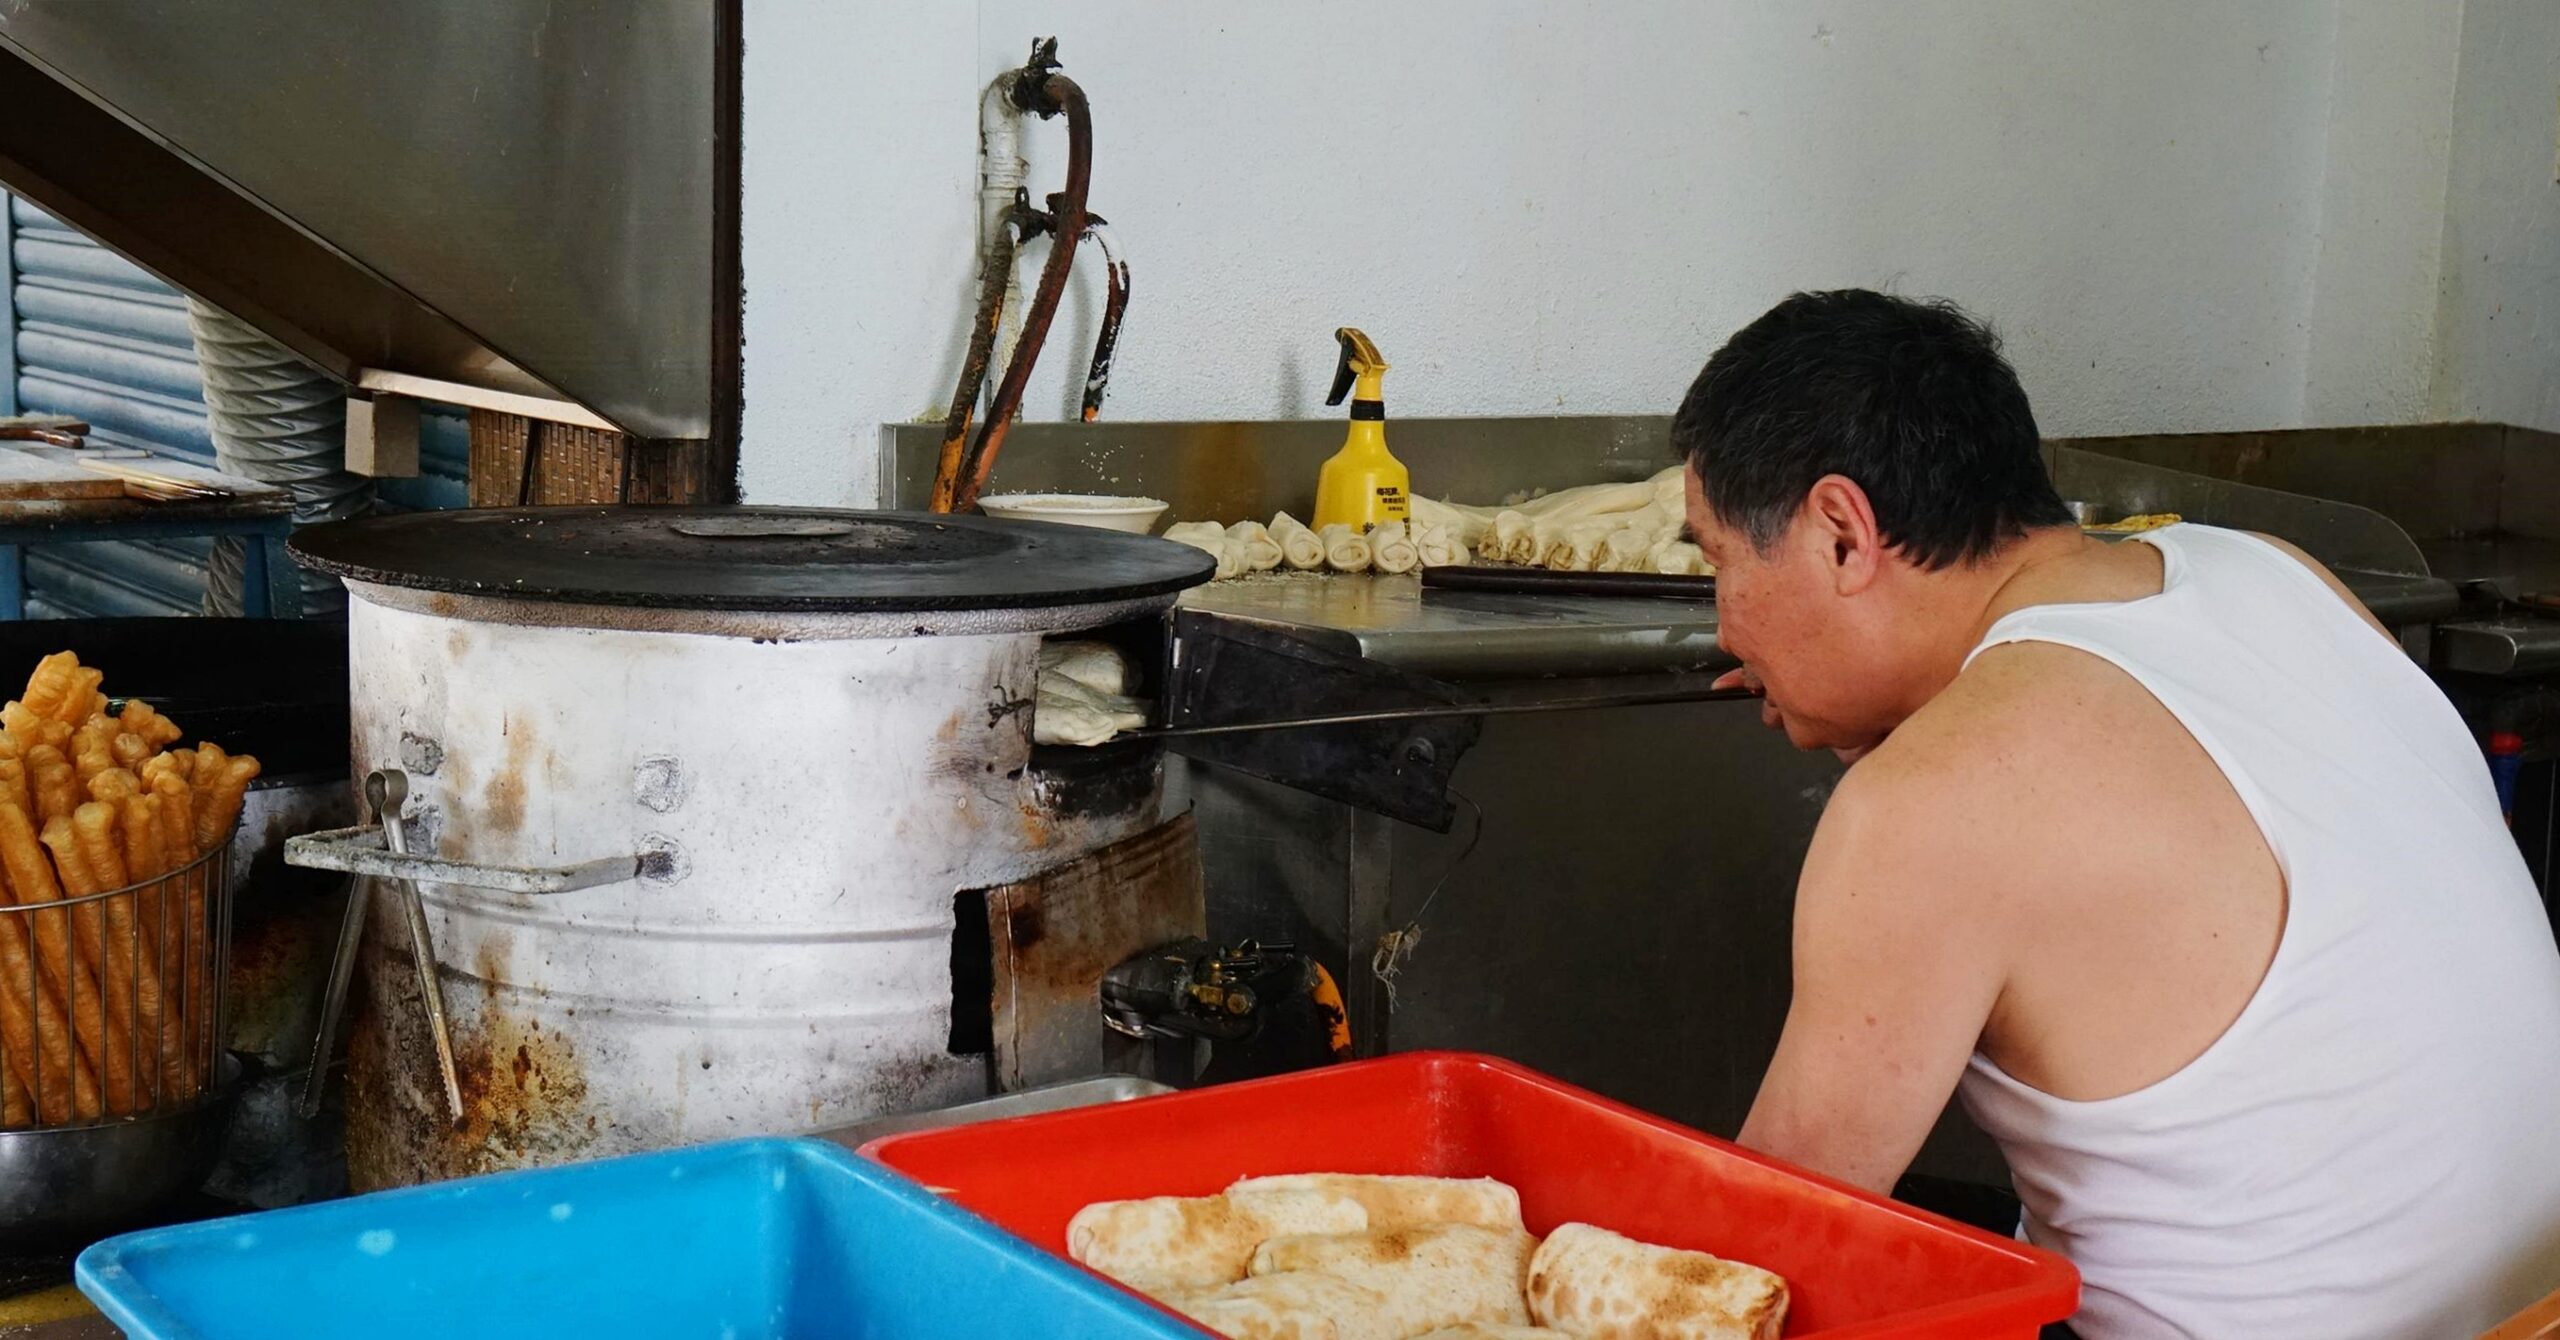 南勢角美食,小梅越南小吃,小梅越南麵包,景平站美食,中和越南麵包,中和美食,越南法國麵包 @PEKO の Simple Life